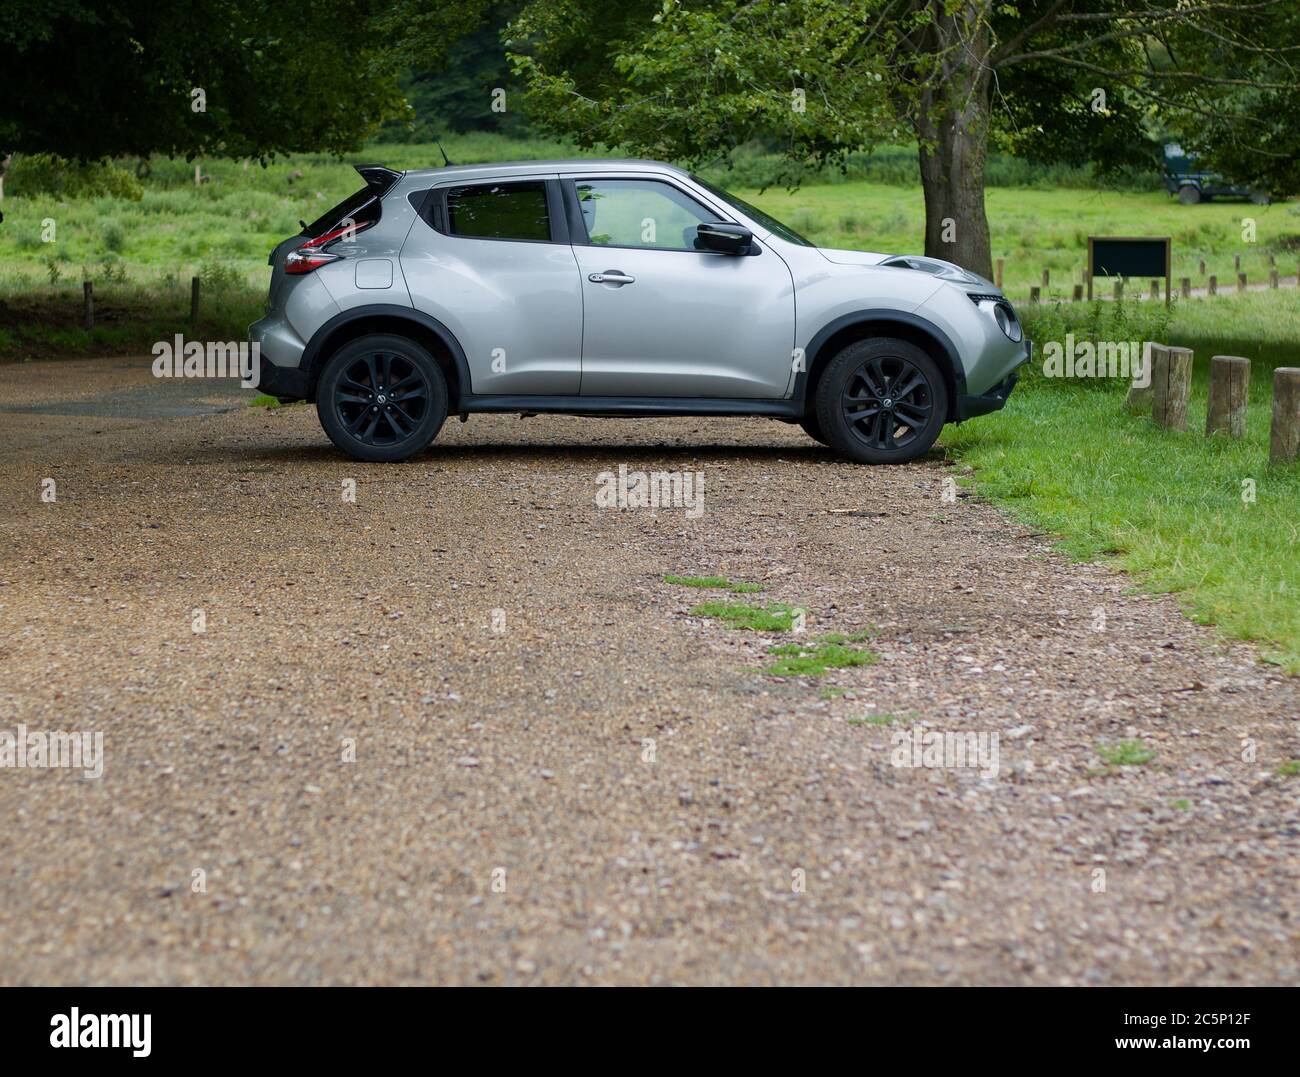 4 juillet 2020 - Angleterre, Royaume-Uni : Nissan Juke garée dans la campagne avec espace de copie Banque D'Images